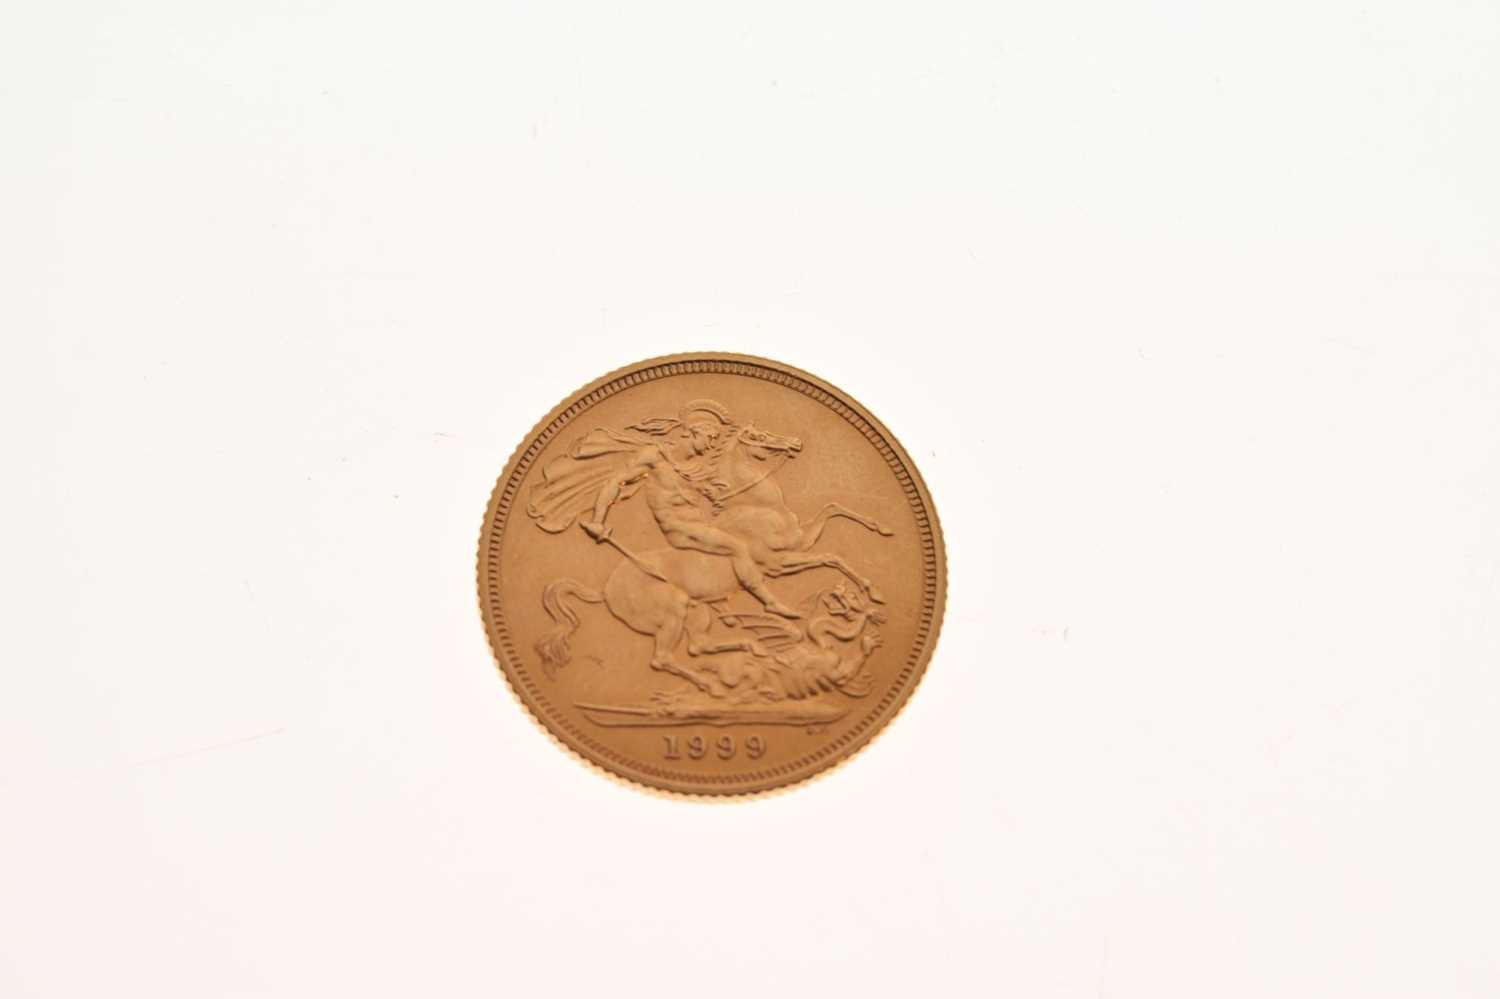 Elizabeth II gold sovereign, 1999 - Image 3 of 4